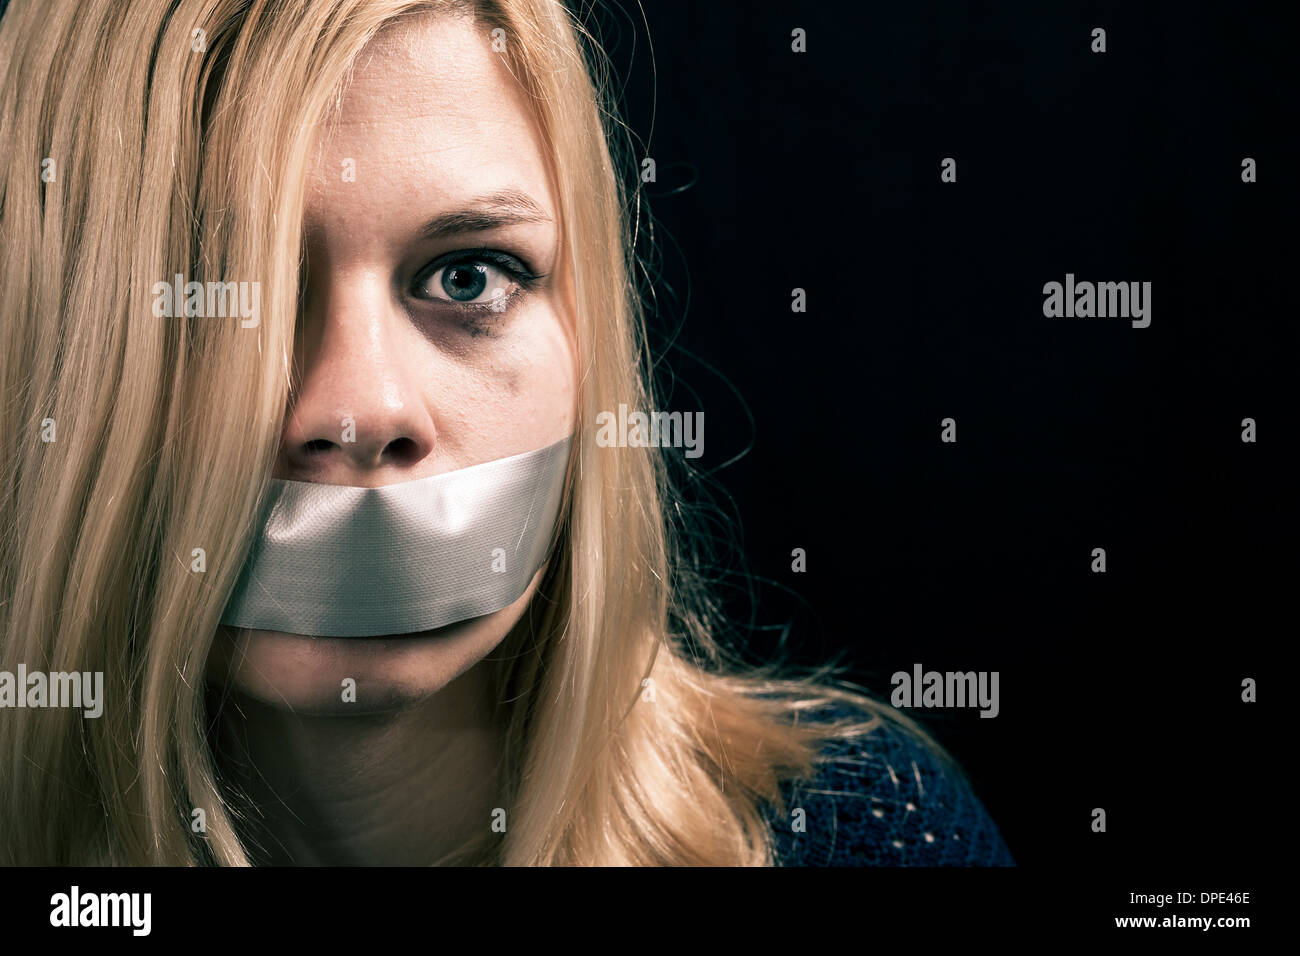 Retrato de mujer asustada secuestrados como rehenes con cinta adhesiva sobre su boca Foto de stock